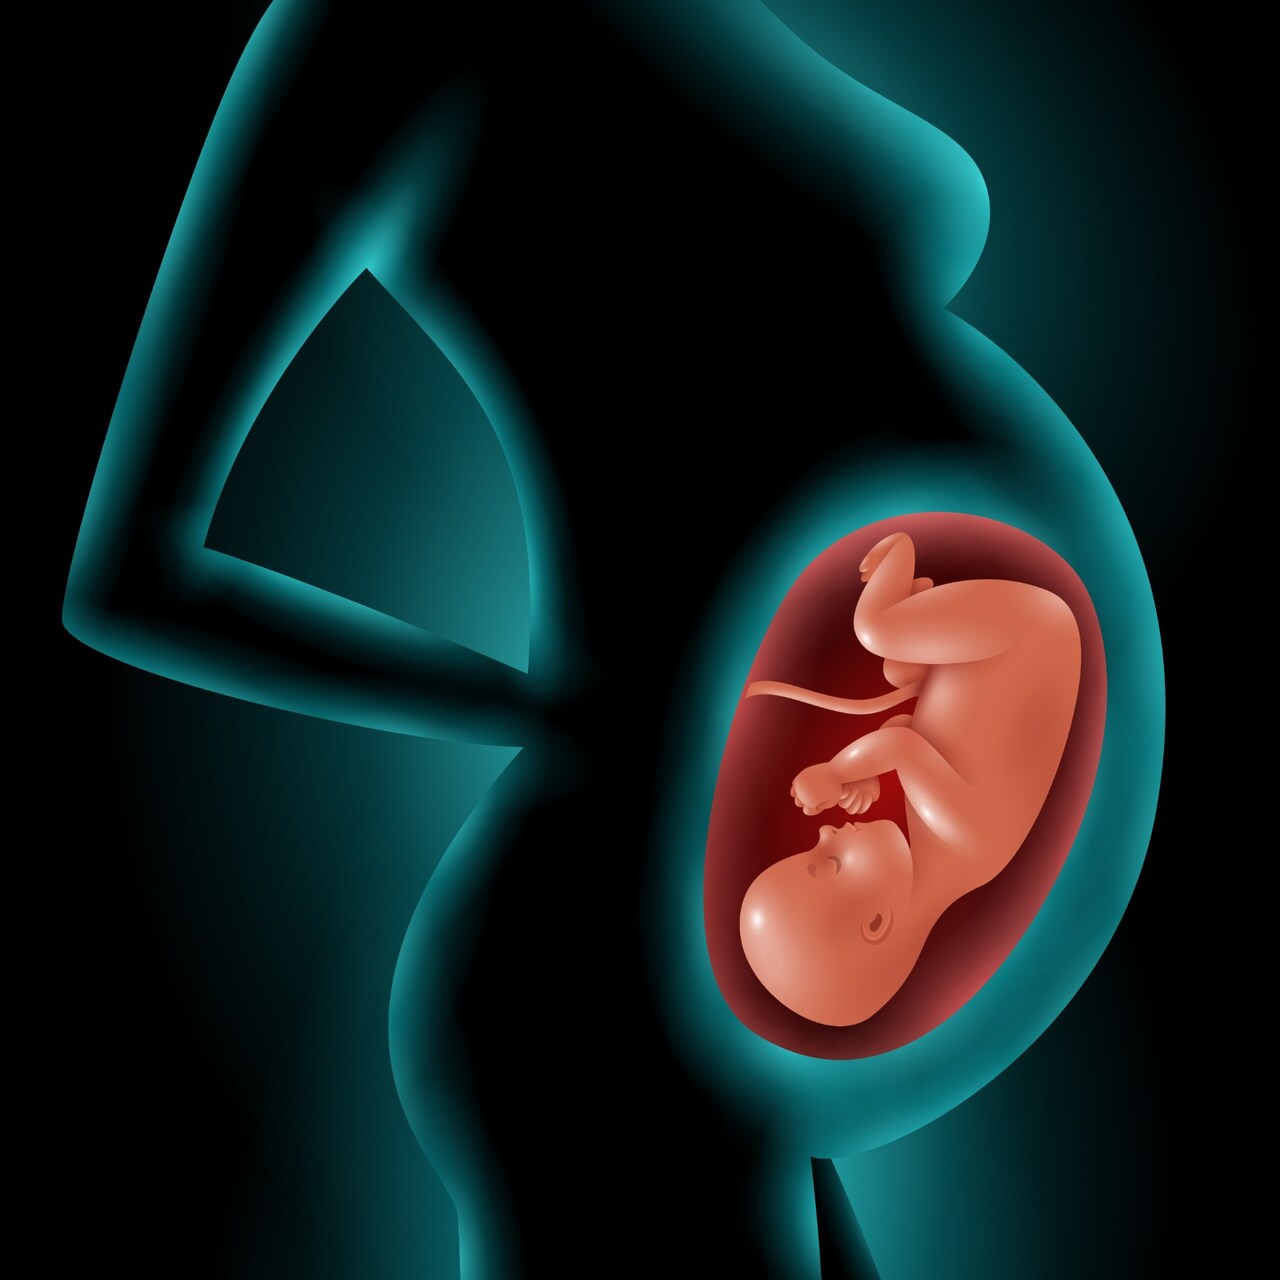 Descolamento da placenta: você sabe o que é?